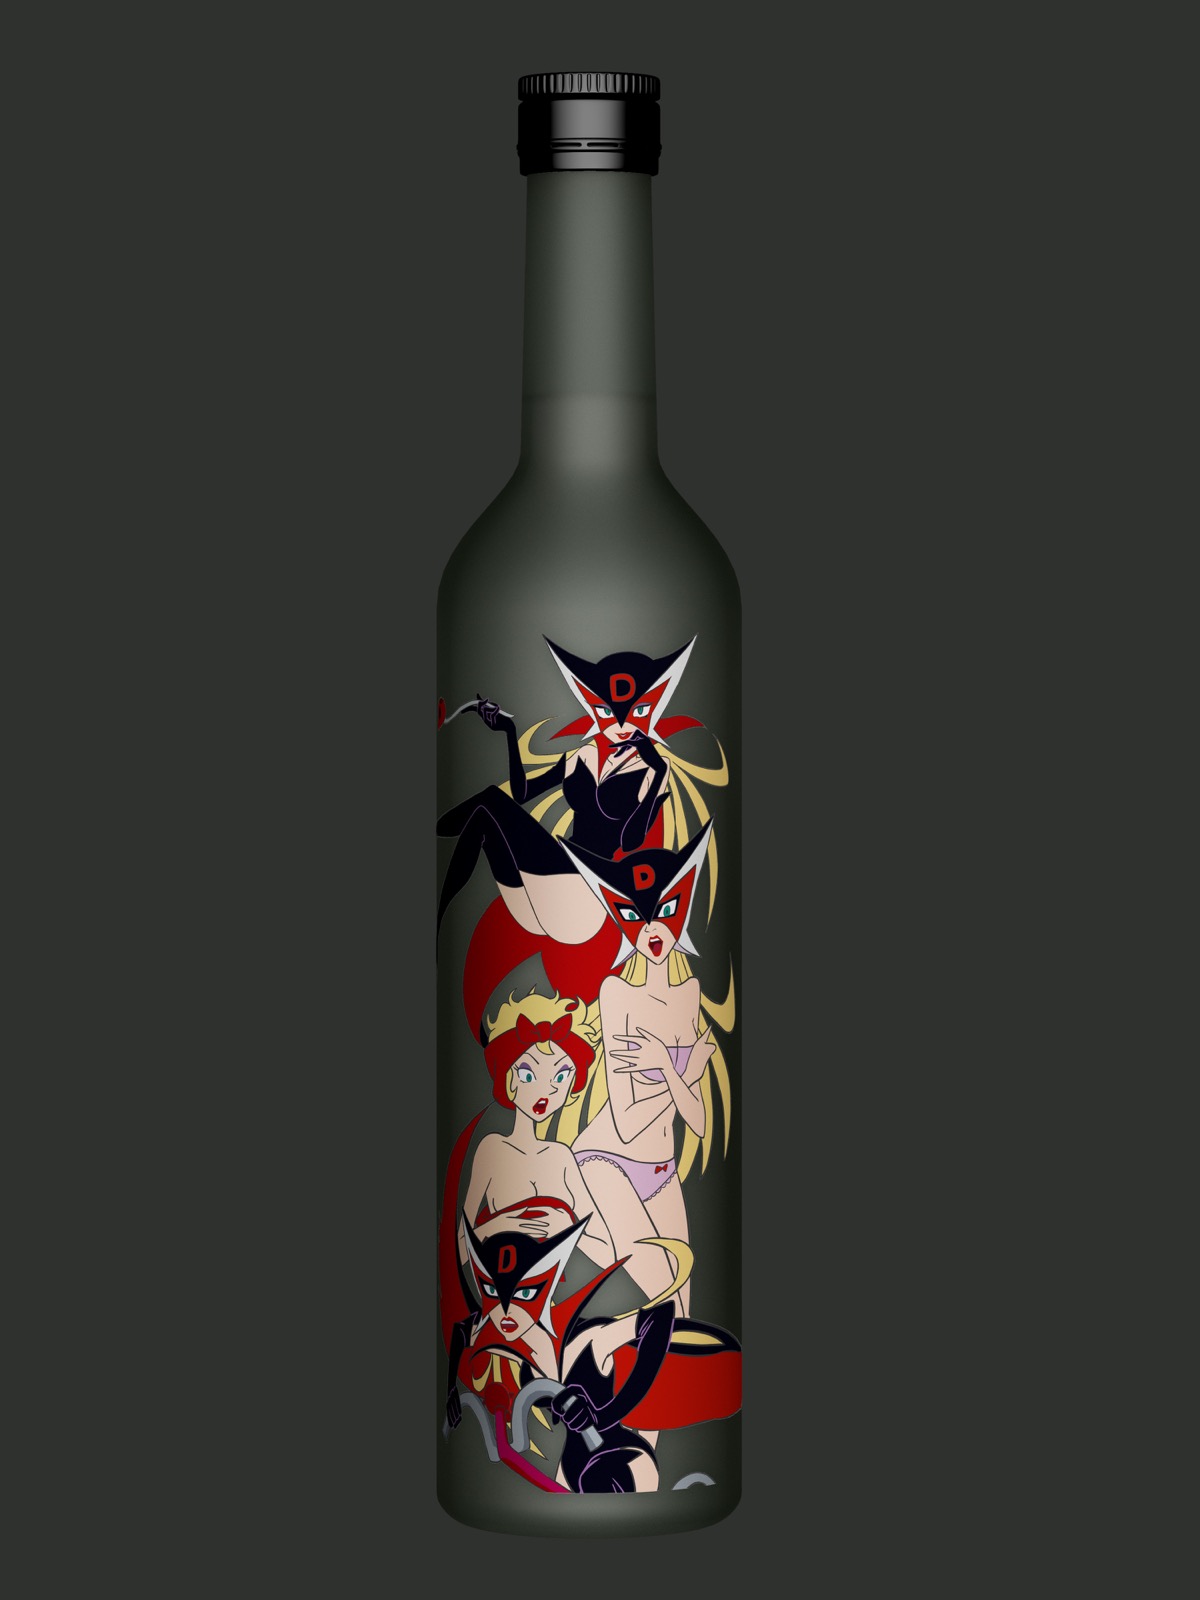 懐かしアニメの美女ヒロインたちが なんと日本酒のボトルデザインになって登場 ニコニコニュース